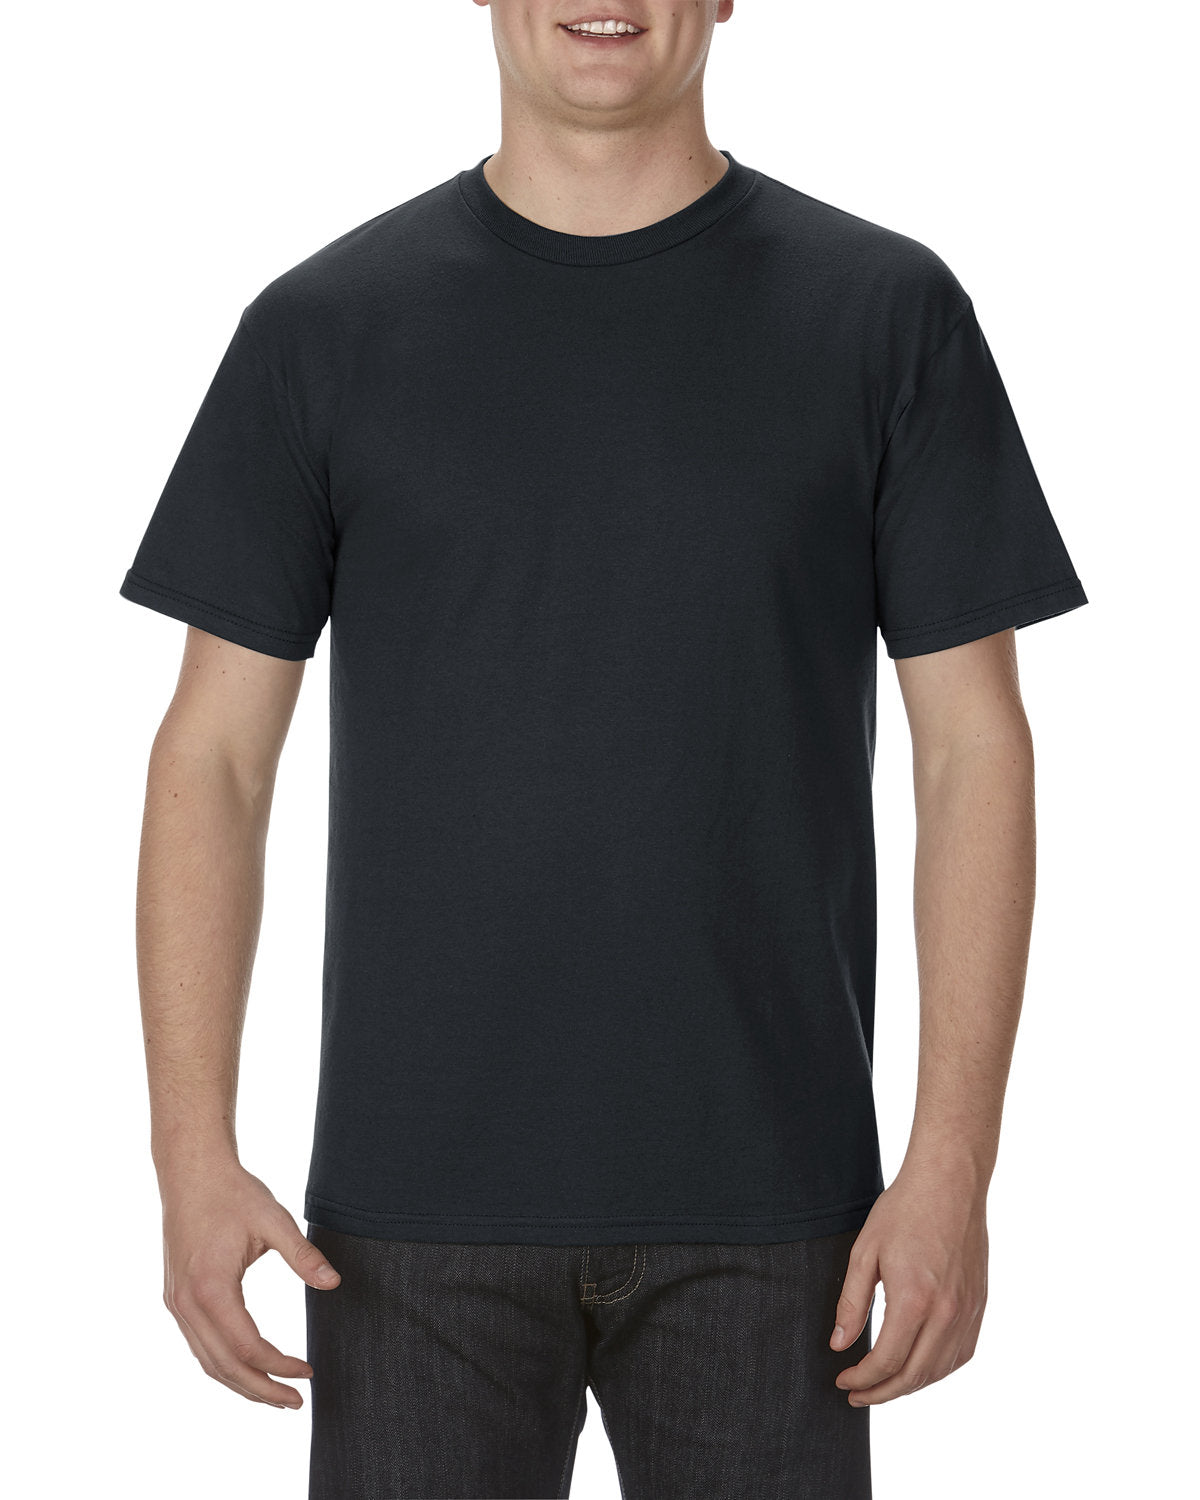 Alstyle Soft Spun Comfort: Introducing the Adult 5.5 oz., 100% Soft Spun Cotton T-Shirt